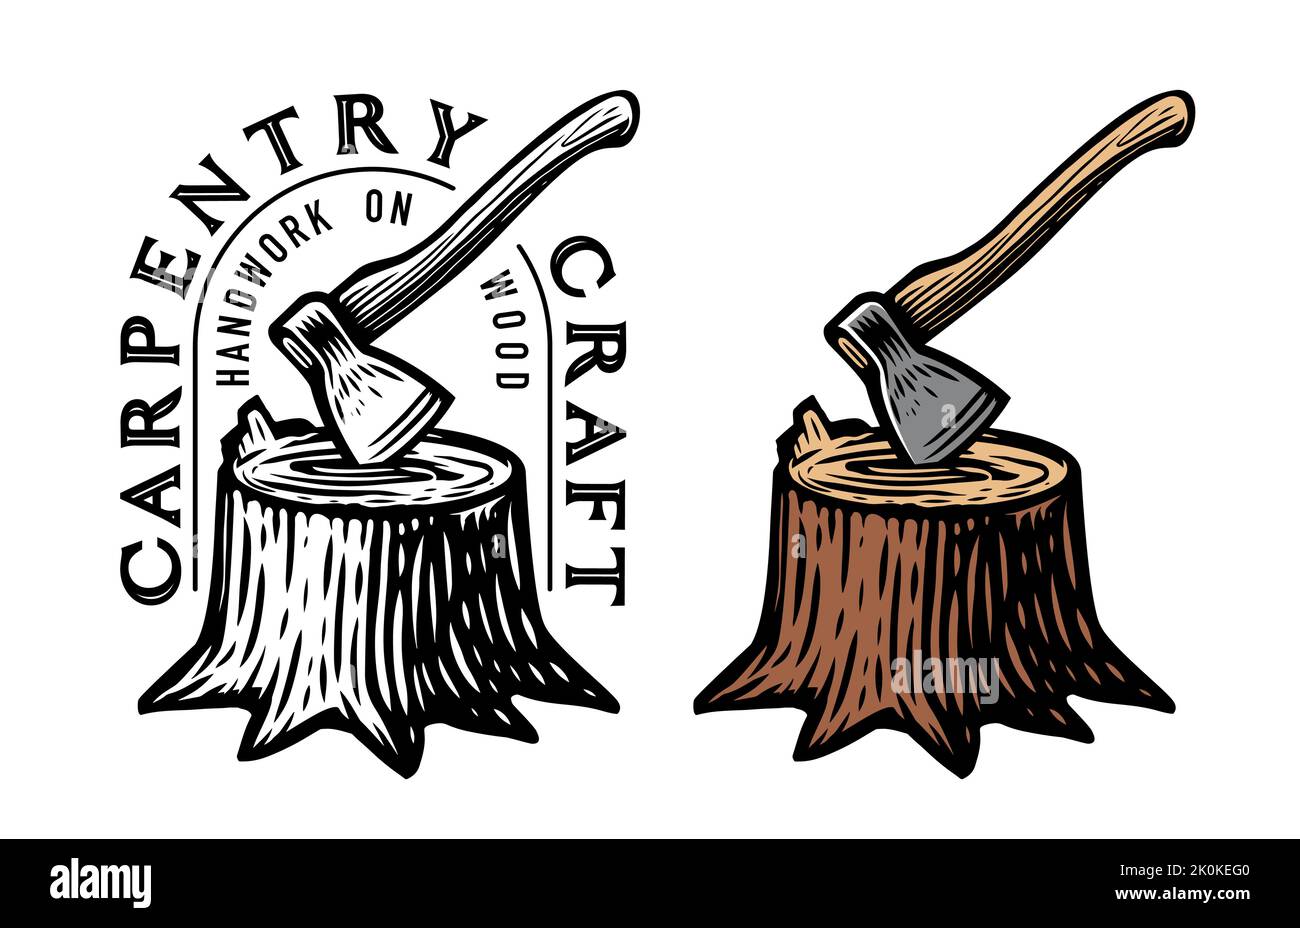 Logo oder Emblem der Zimmerei. Stumpf mit eingeklemmten Axt. Holz schneiden, Holzfäller. Werkzeugaxt zum Schneiden von Holz. Abzeichen aus natürlichem Holz Stock Vektor